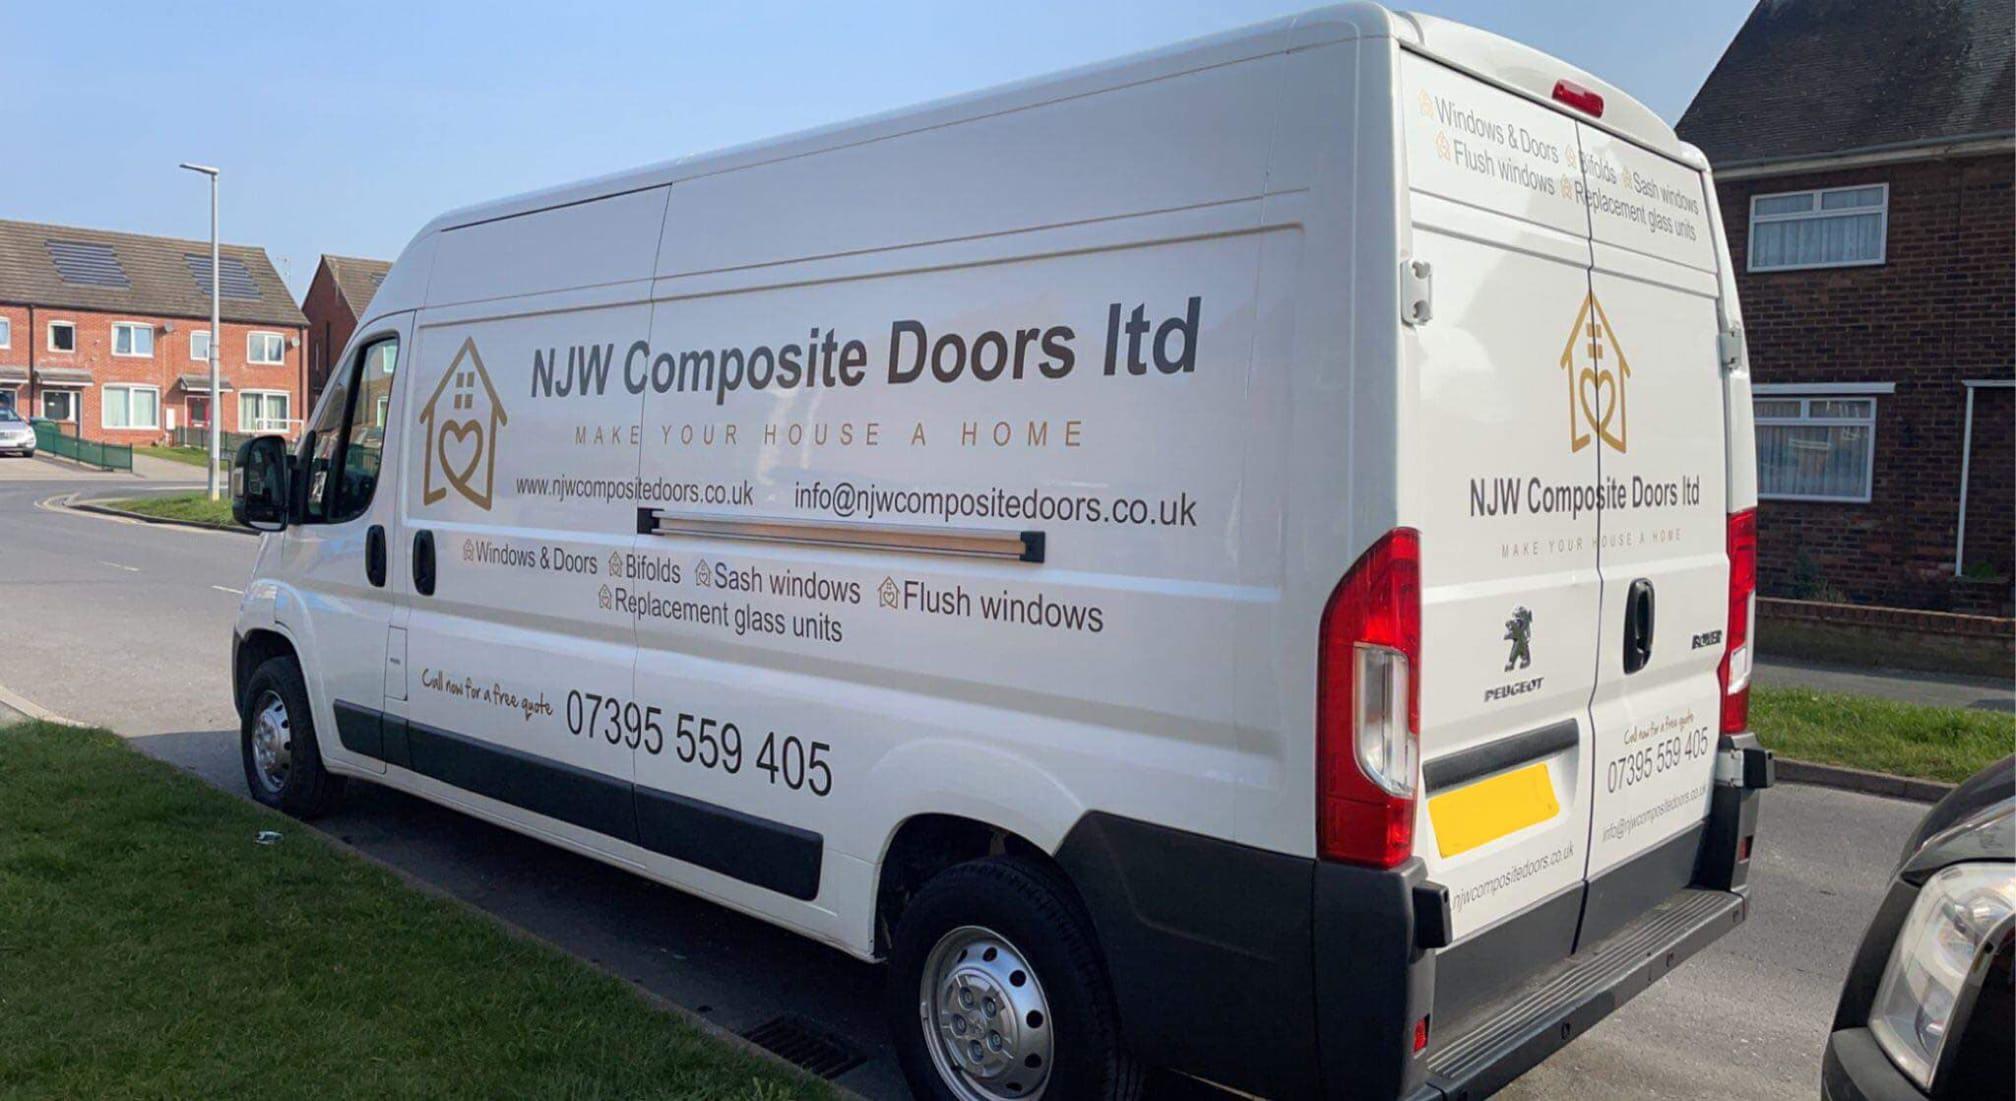 Images NJW Composite Doors Ltd